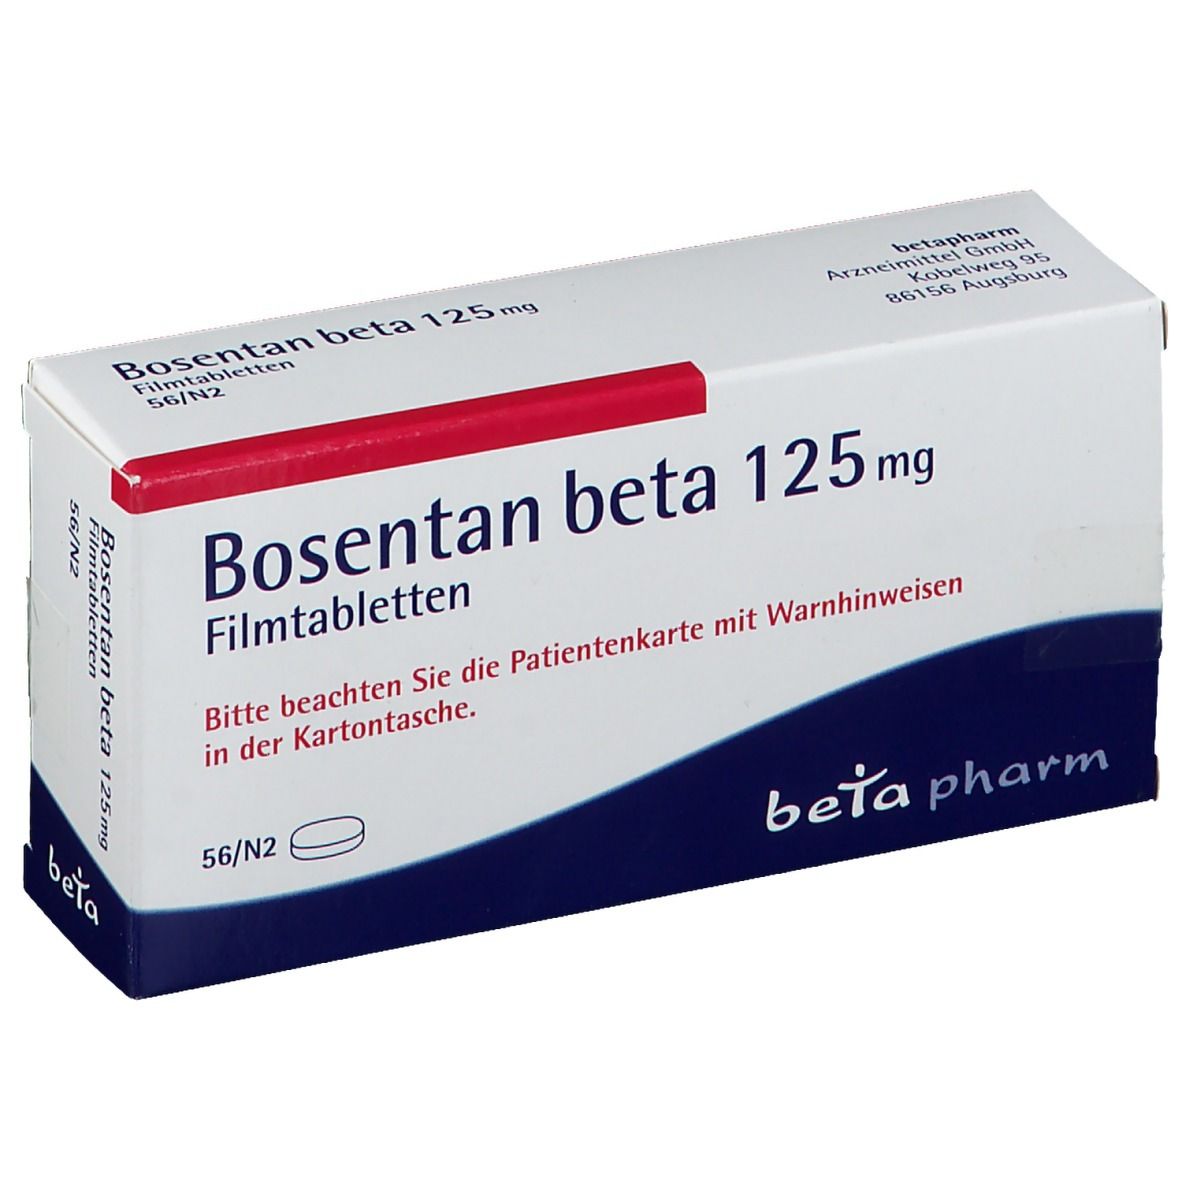 Bosentan beta 125 mg